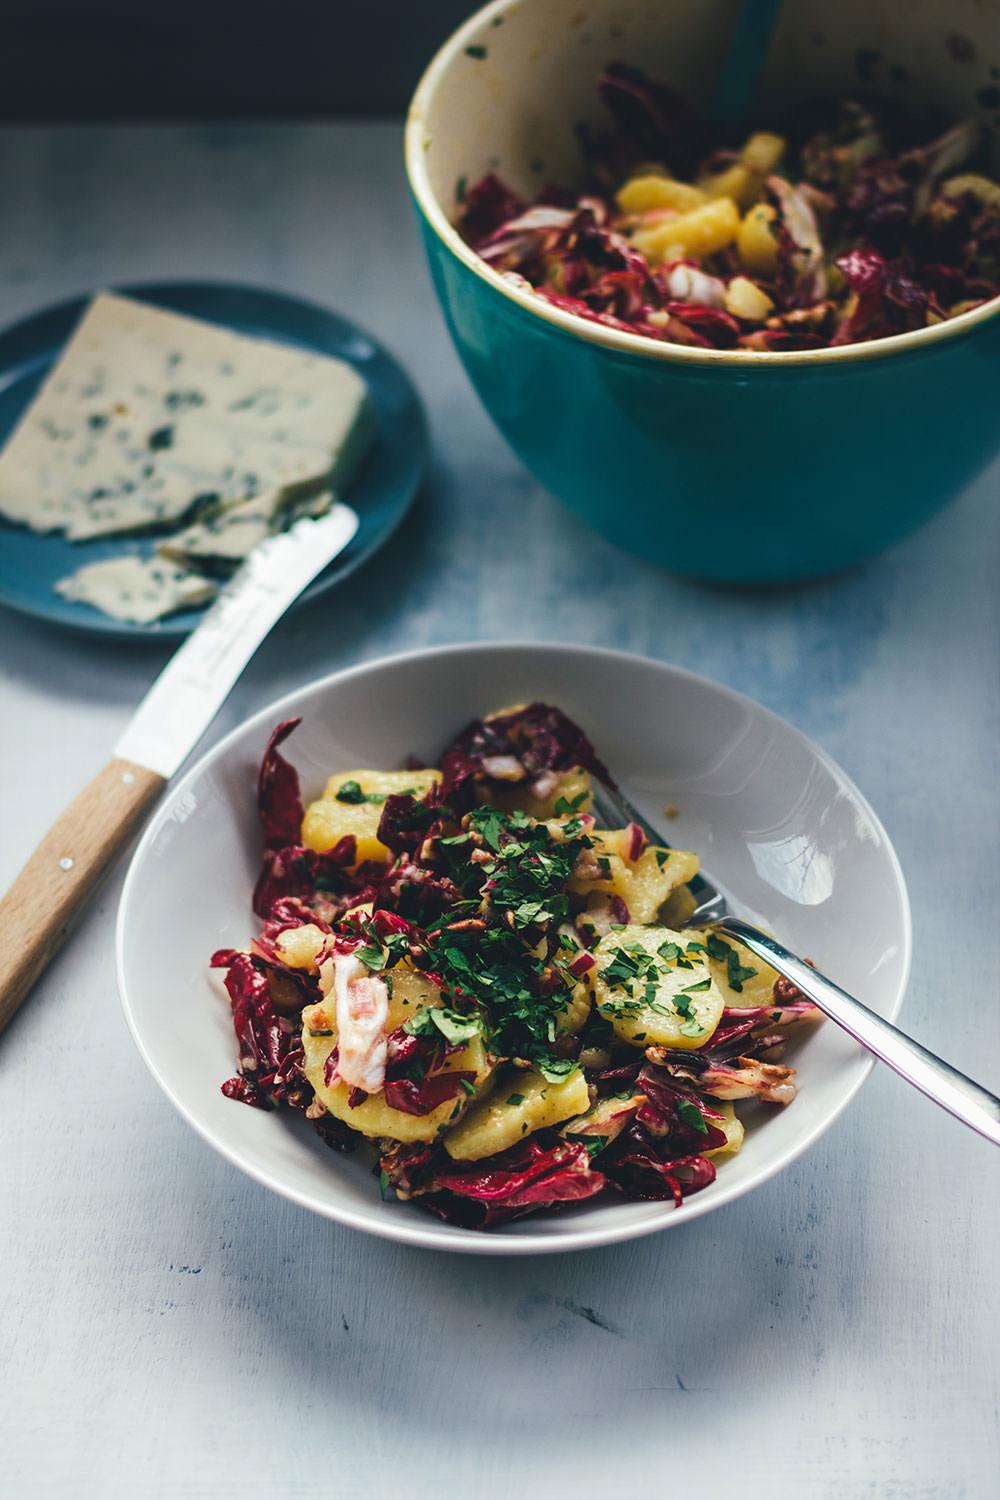 Rezept für Winter-Kartoffelsalat mit Radicchio, Pekannüssen und Gorgonzola | moeyskitchen.com #kartoffelsalat #winterkartoffelsalat #wintersalat #salat #winter #foodblogger #rezepte